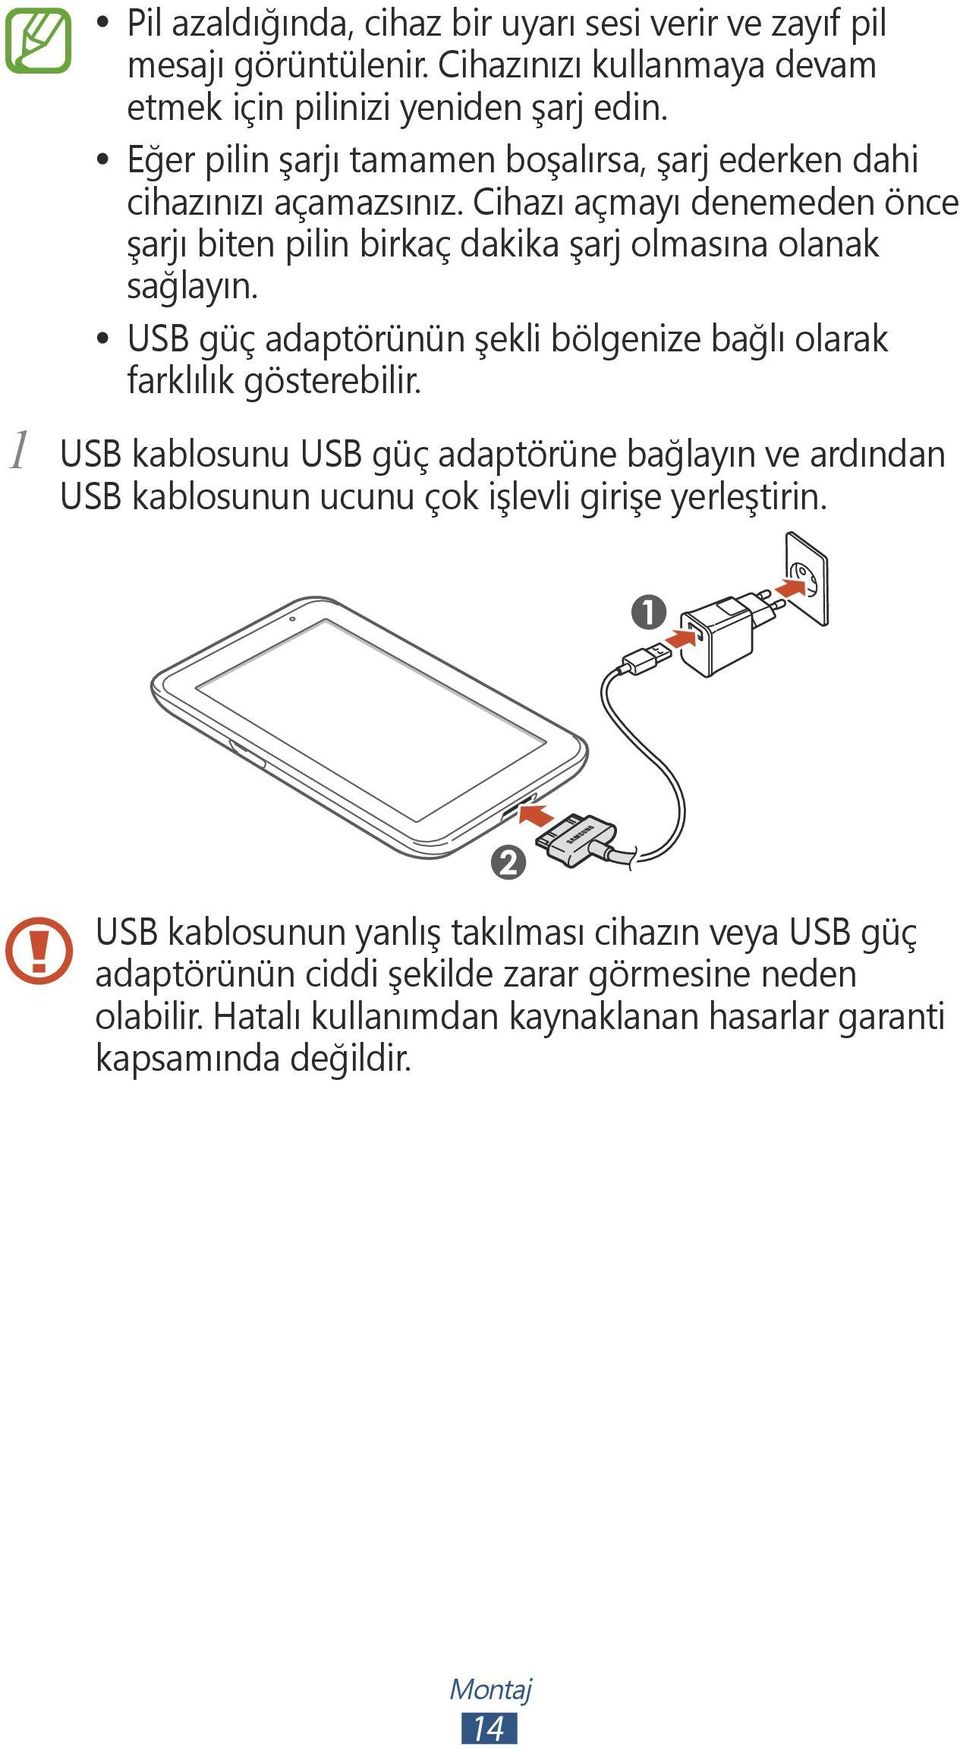 USB güç adaptörünün şekli bölgenize bağlı olarak farklılık gösterebilir.